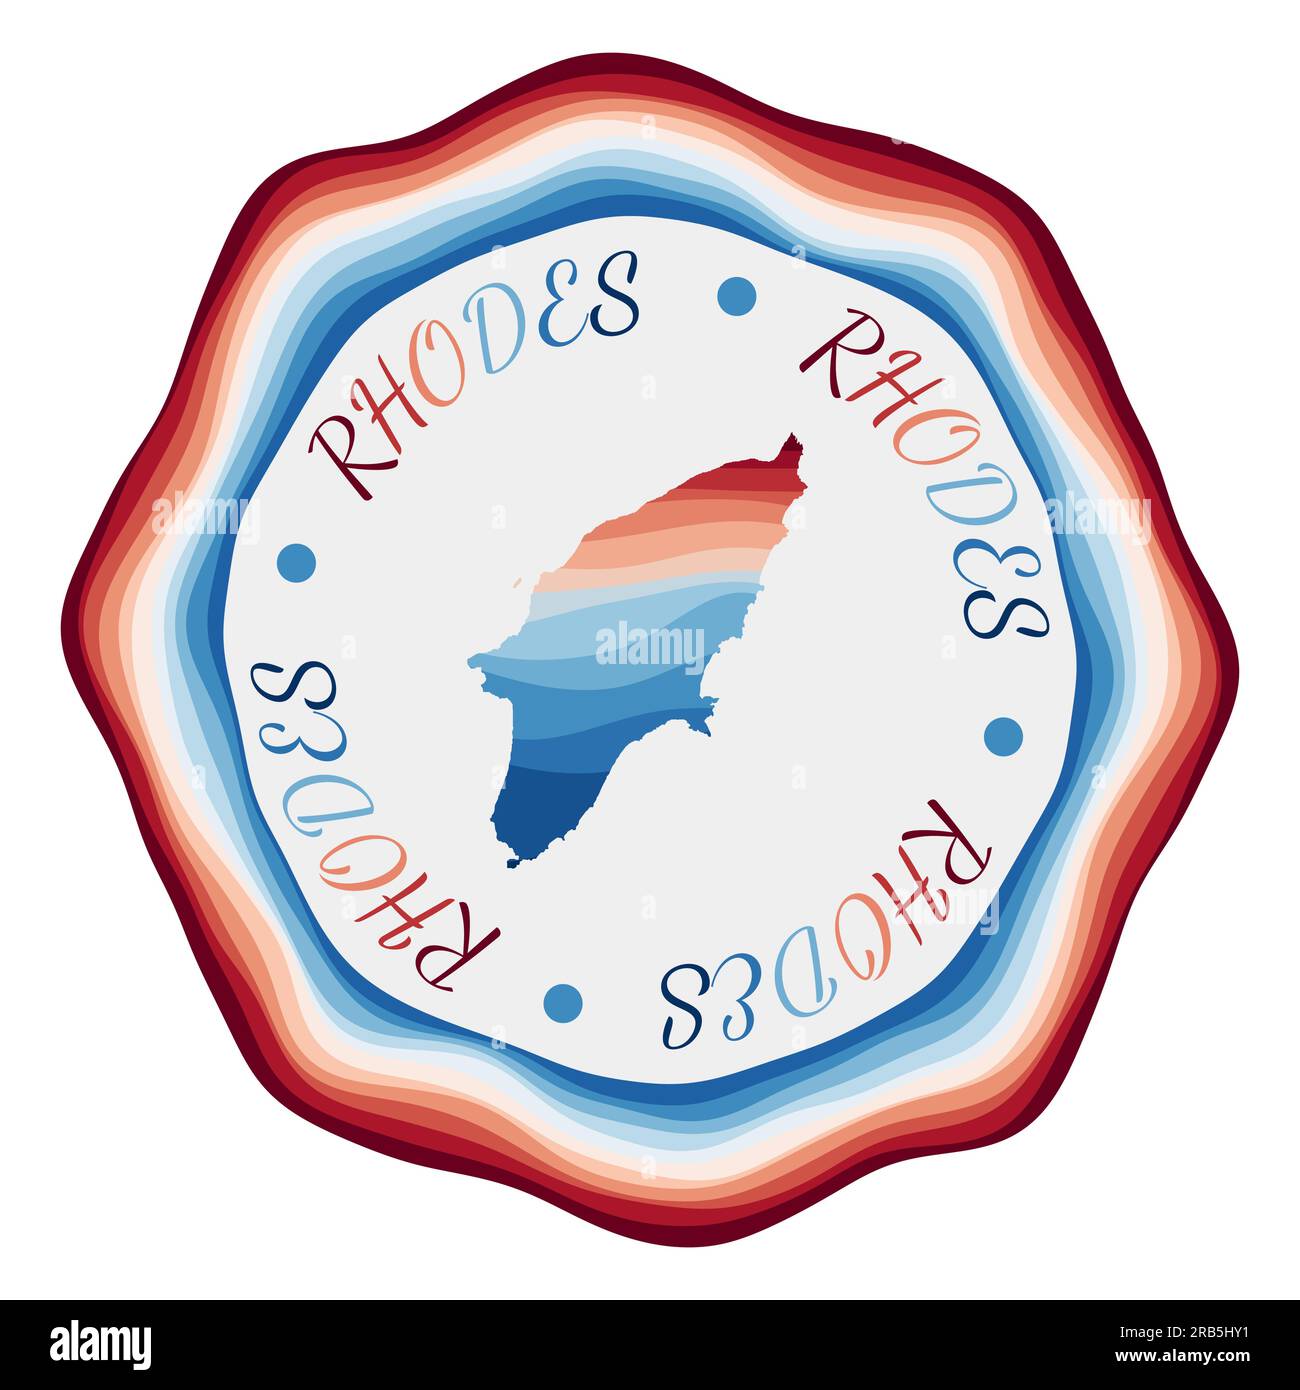 Distintivo Rhodes. Mappa dell'isola con splendide onde geometriche e una cornice blu-rossa brillante. Logo Rodi rotondo brillante. Illustrazione vettoriale. Illustrazione Vettoriale